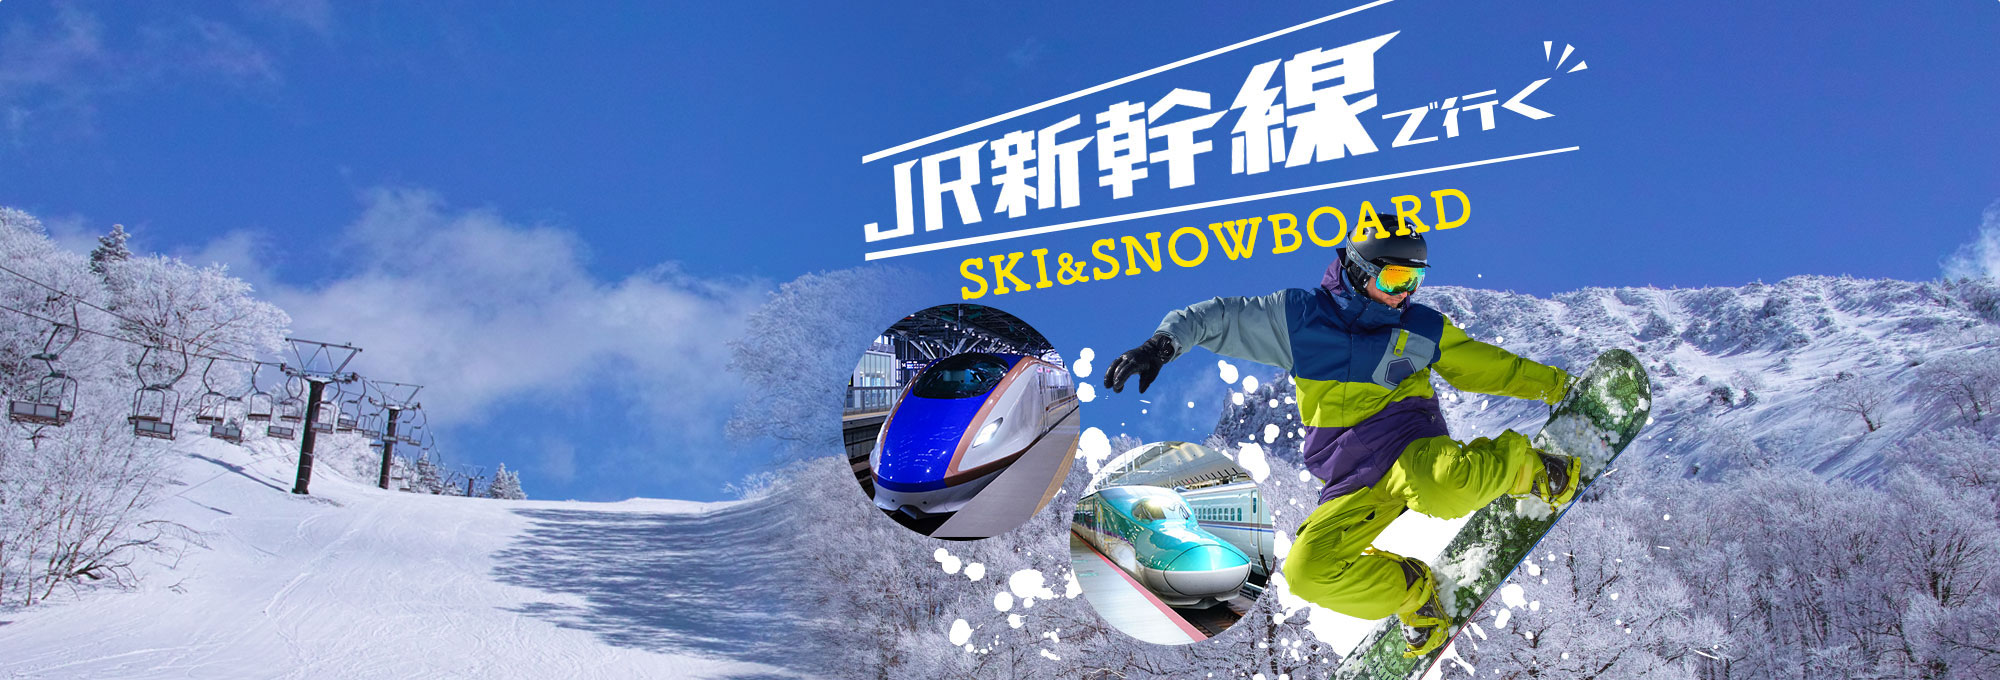 青森スプリング・スキーリゾート JR新幹線で行くスキーツアースノボ ...